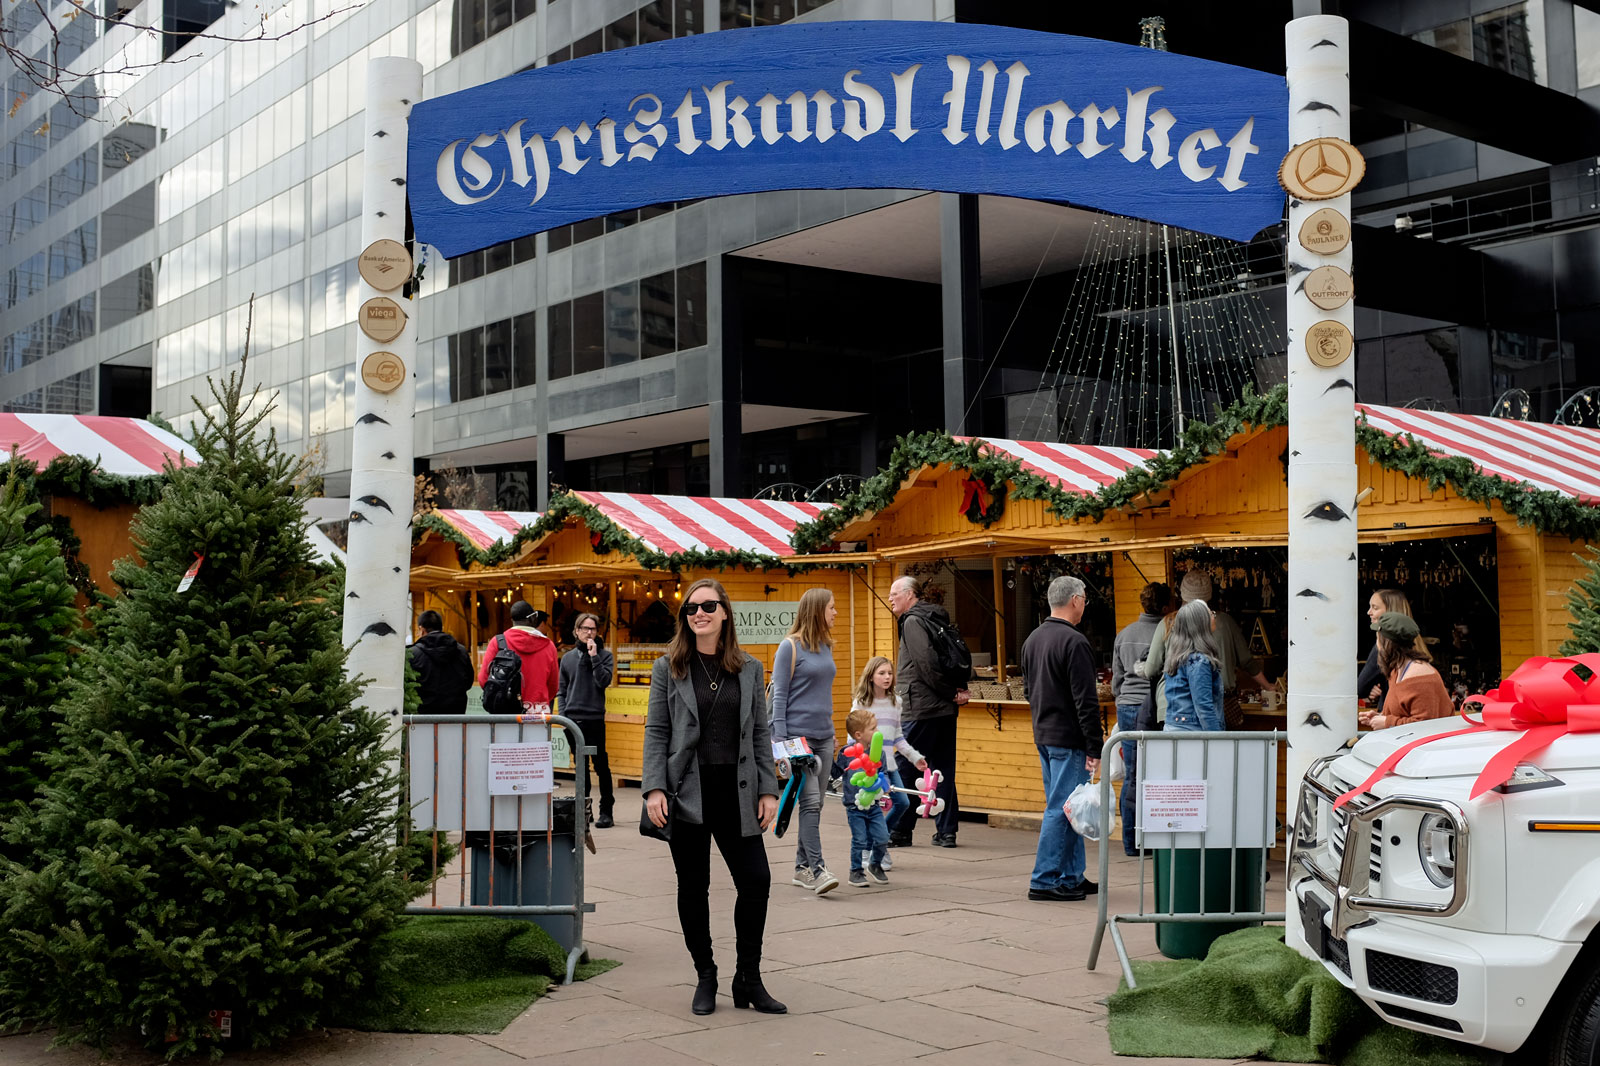 Alyssa stands under the Christkindl Market sign in Denver